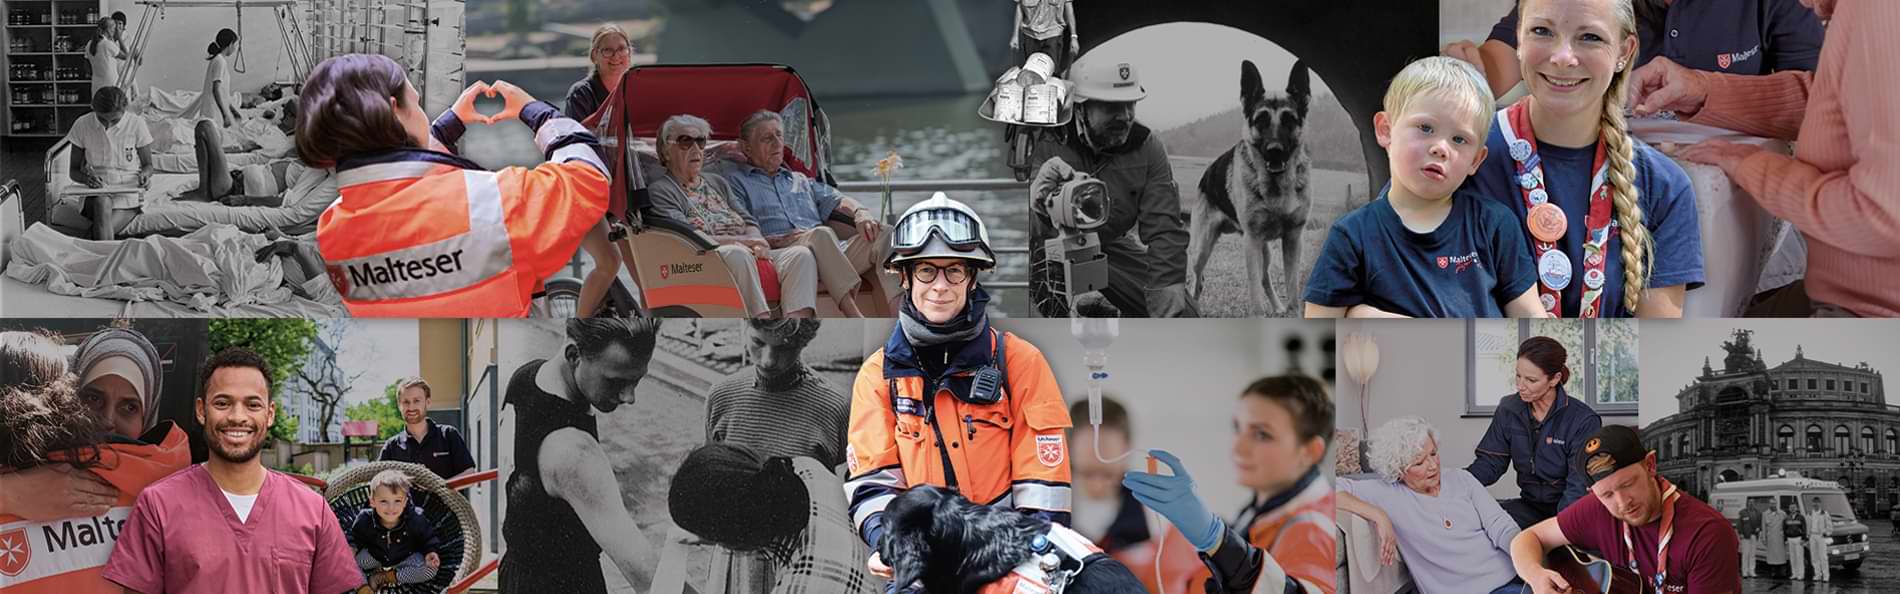 Collage mit Bildern des Malteser Hilfsdienstes